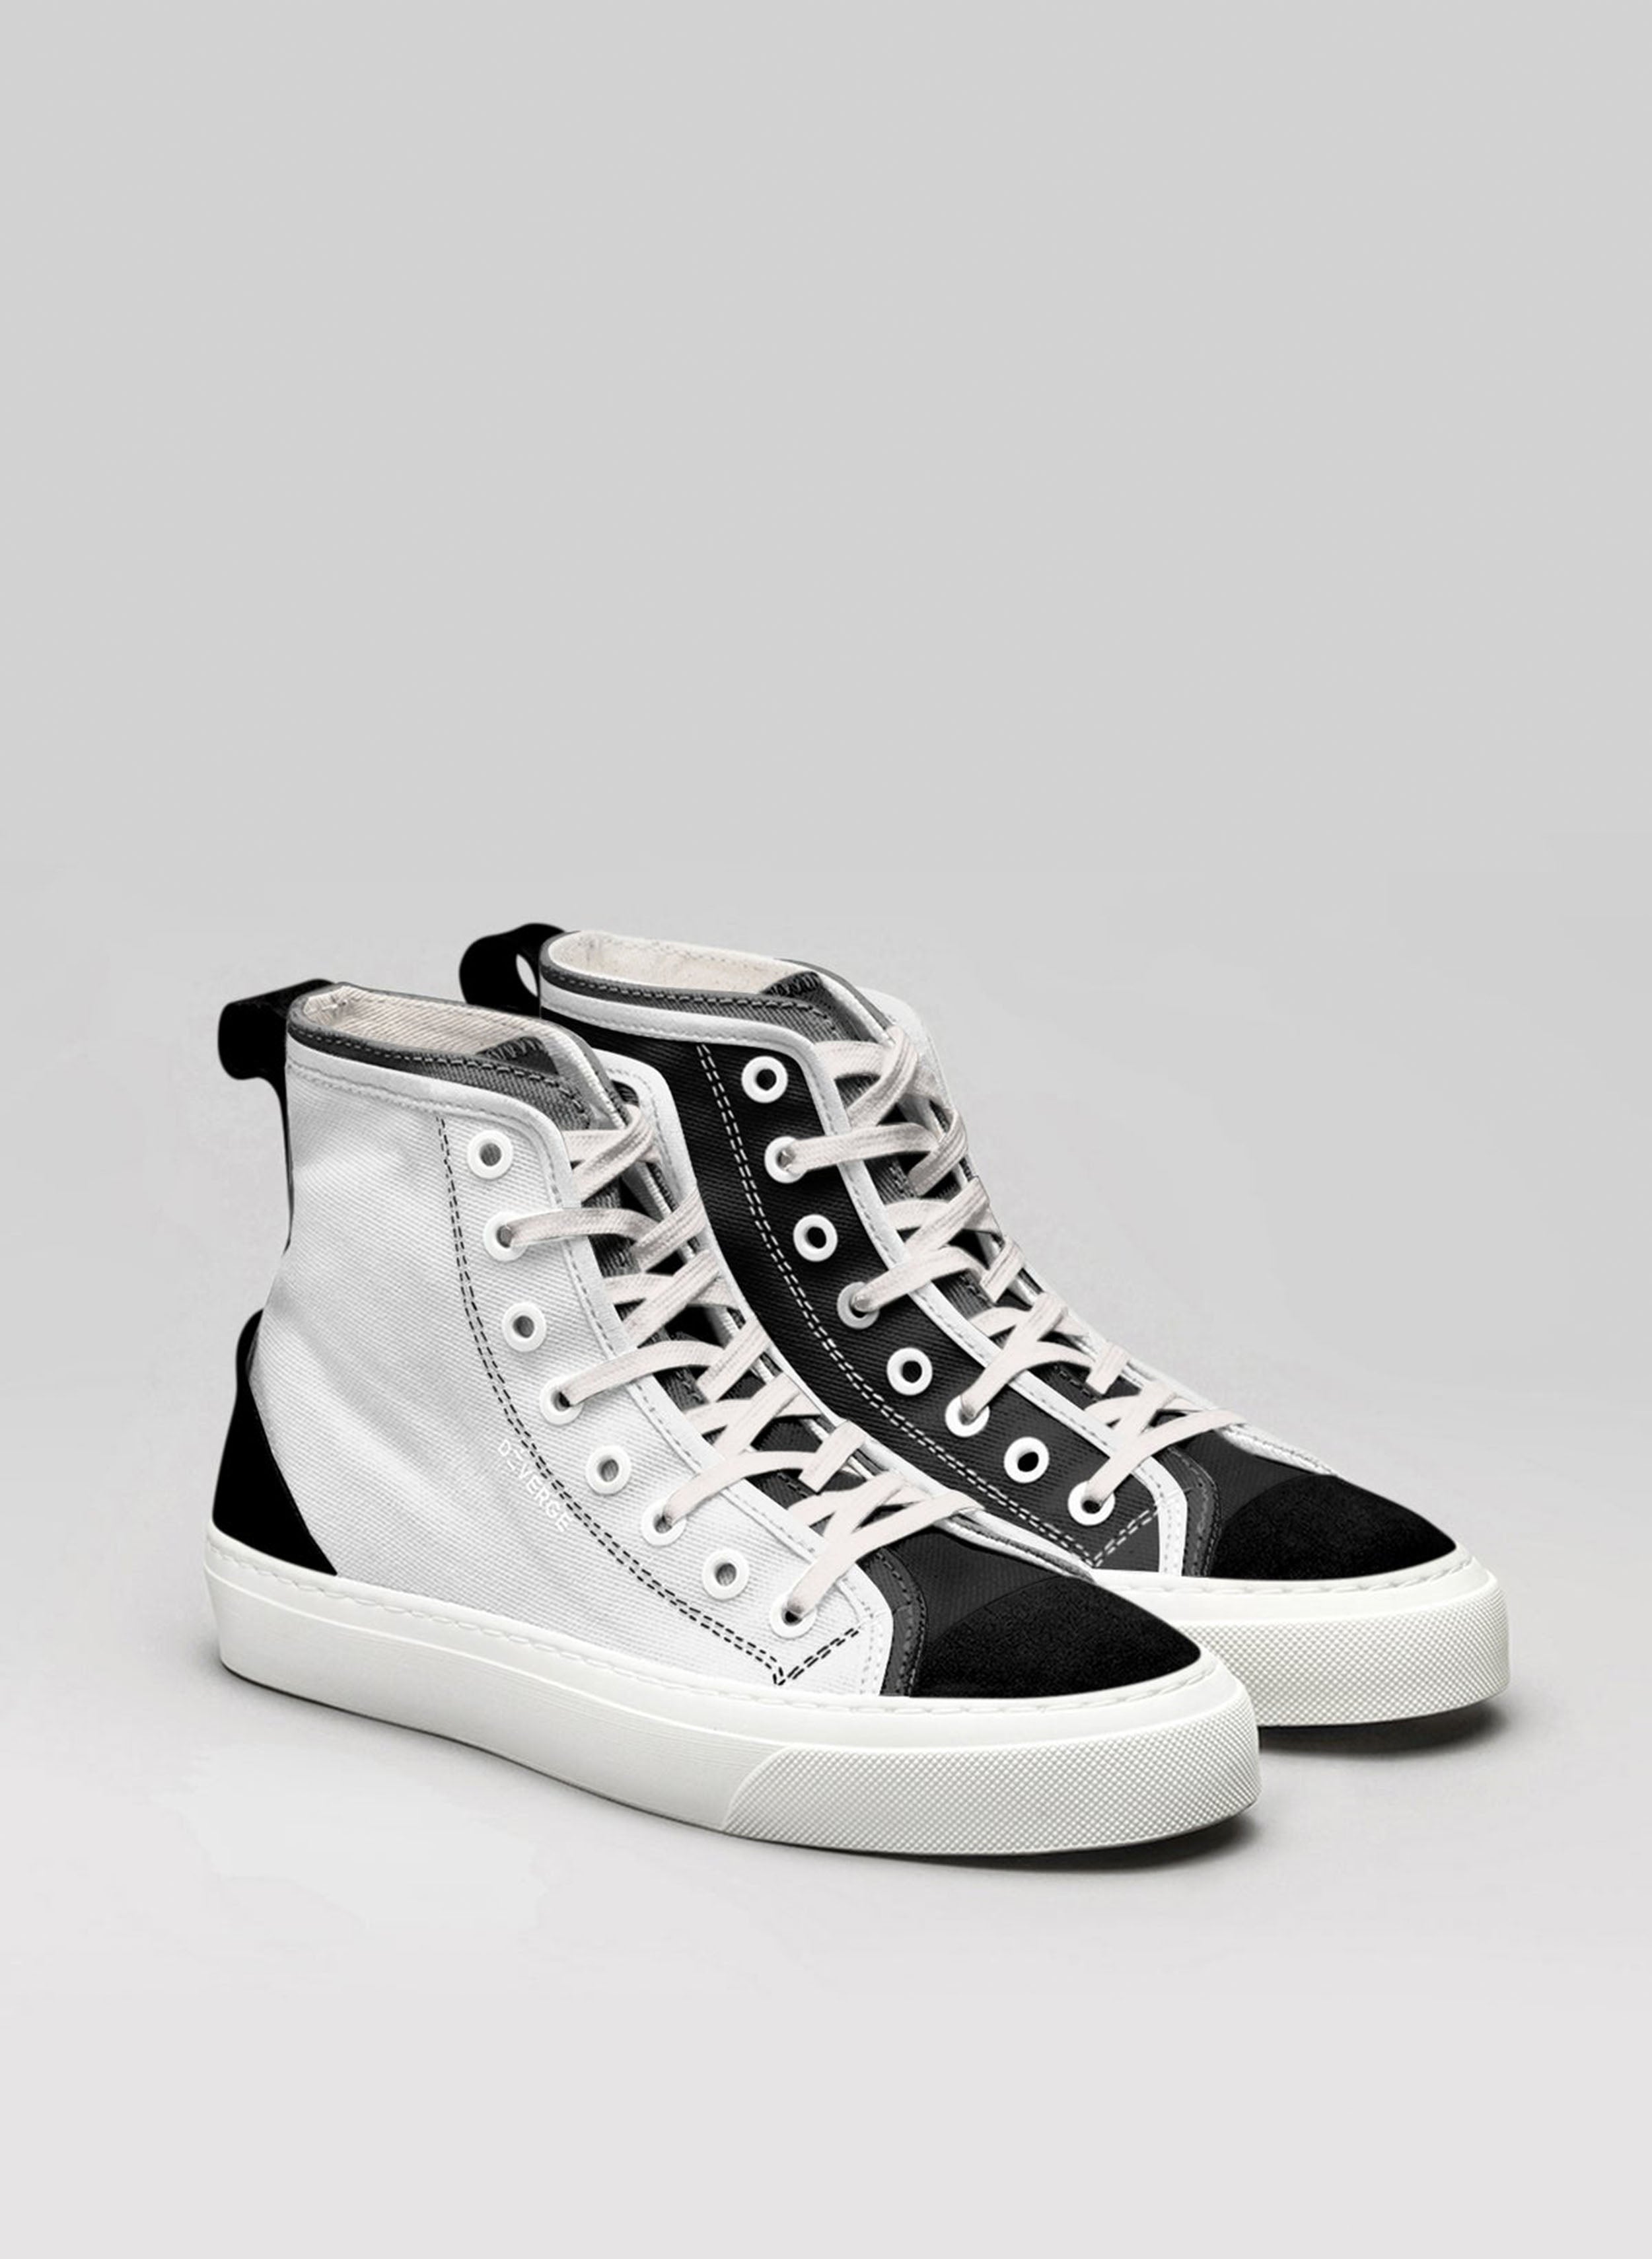 Une paire de chaussures montantes blanches et noires sneakers, présentant des chaussures personnalisées par Diverge.